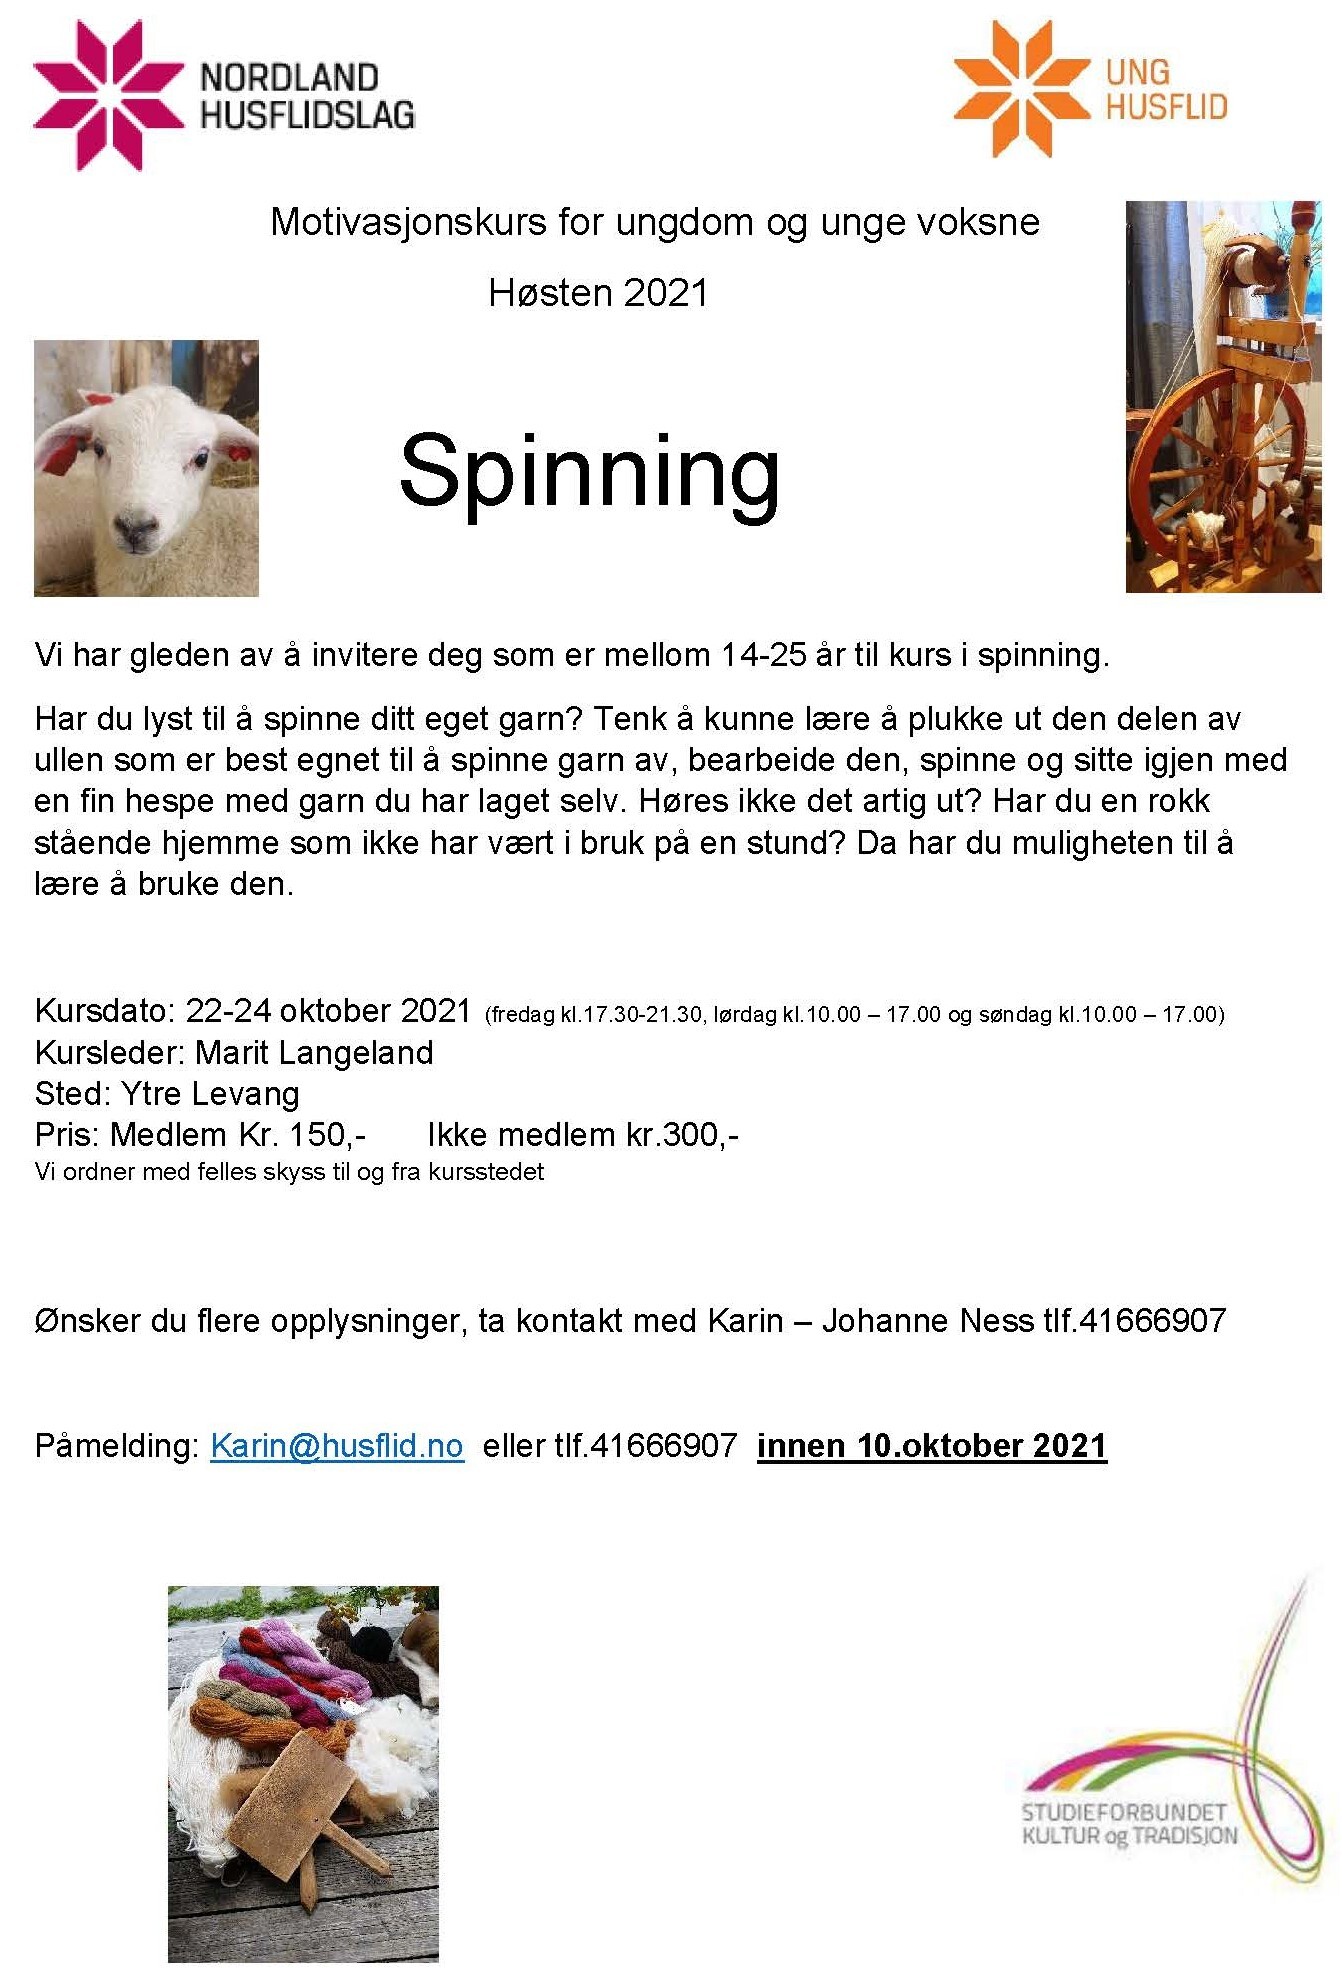 Spinning.jpg